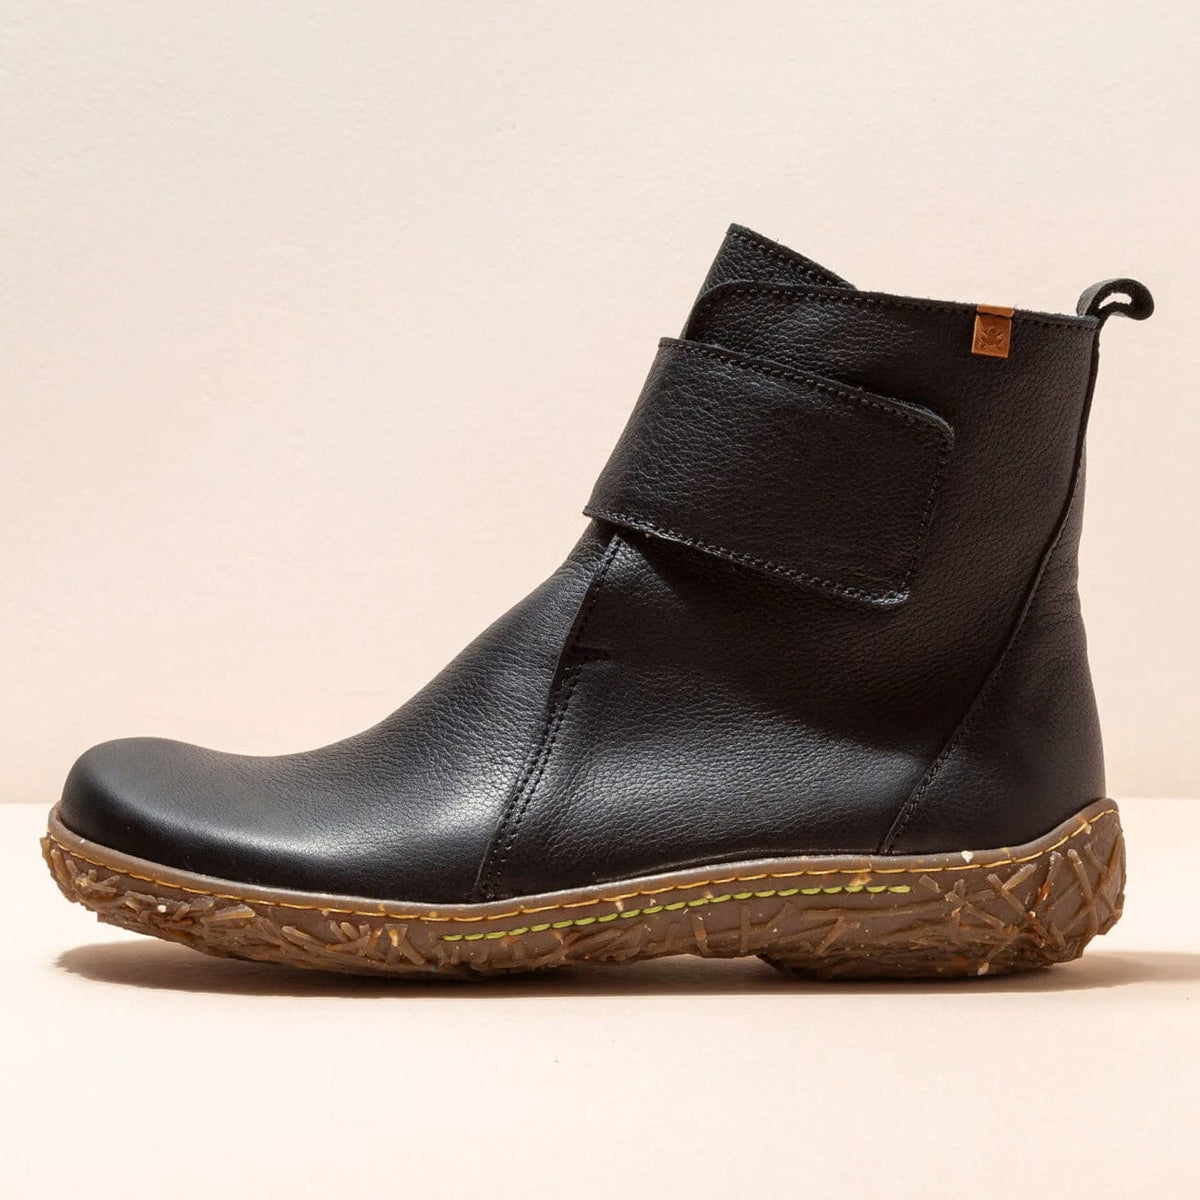 El Naturalista, NIDO ELLA, Boot, Natural Grain Leather, Black Boots El Natura Lista 